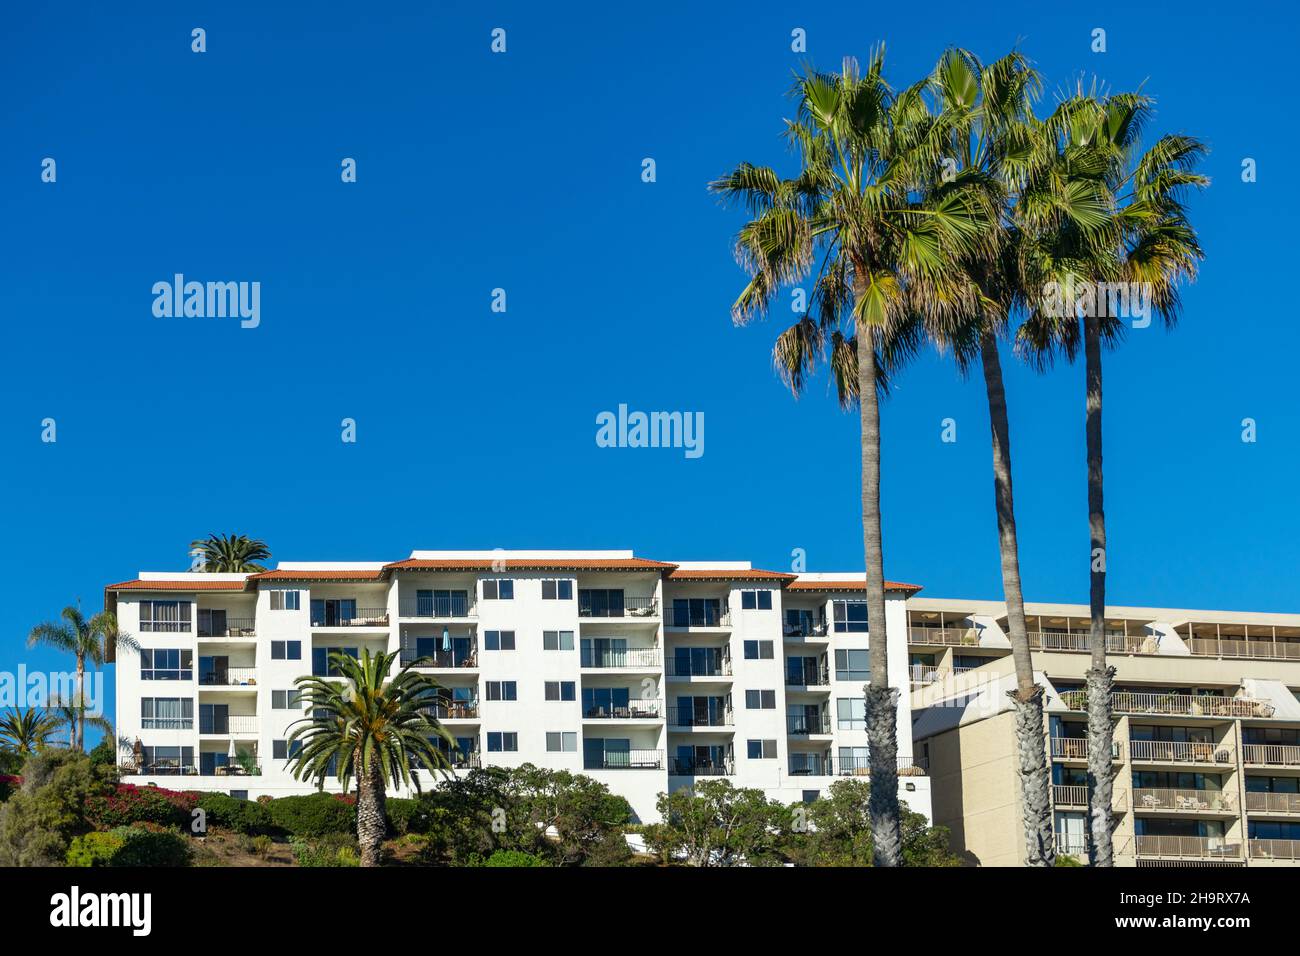 San Clemente, CA, USA – 13. November 2021: Apartmentgebäude mit Balkonen und großen Palmen in der Strandgemeinde San Clemente, Kalifornien. Stockfoto